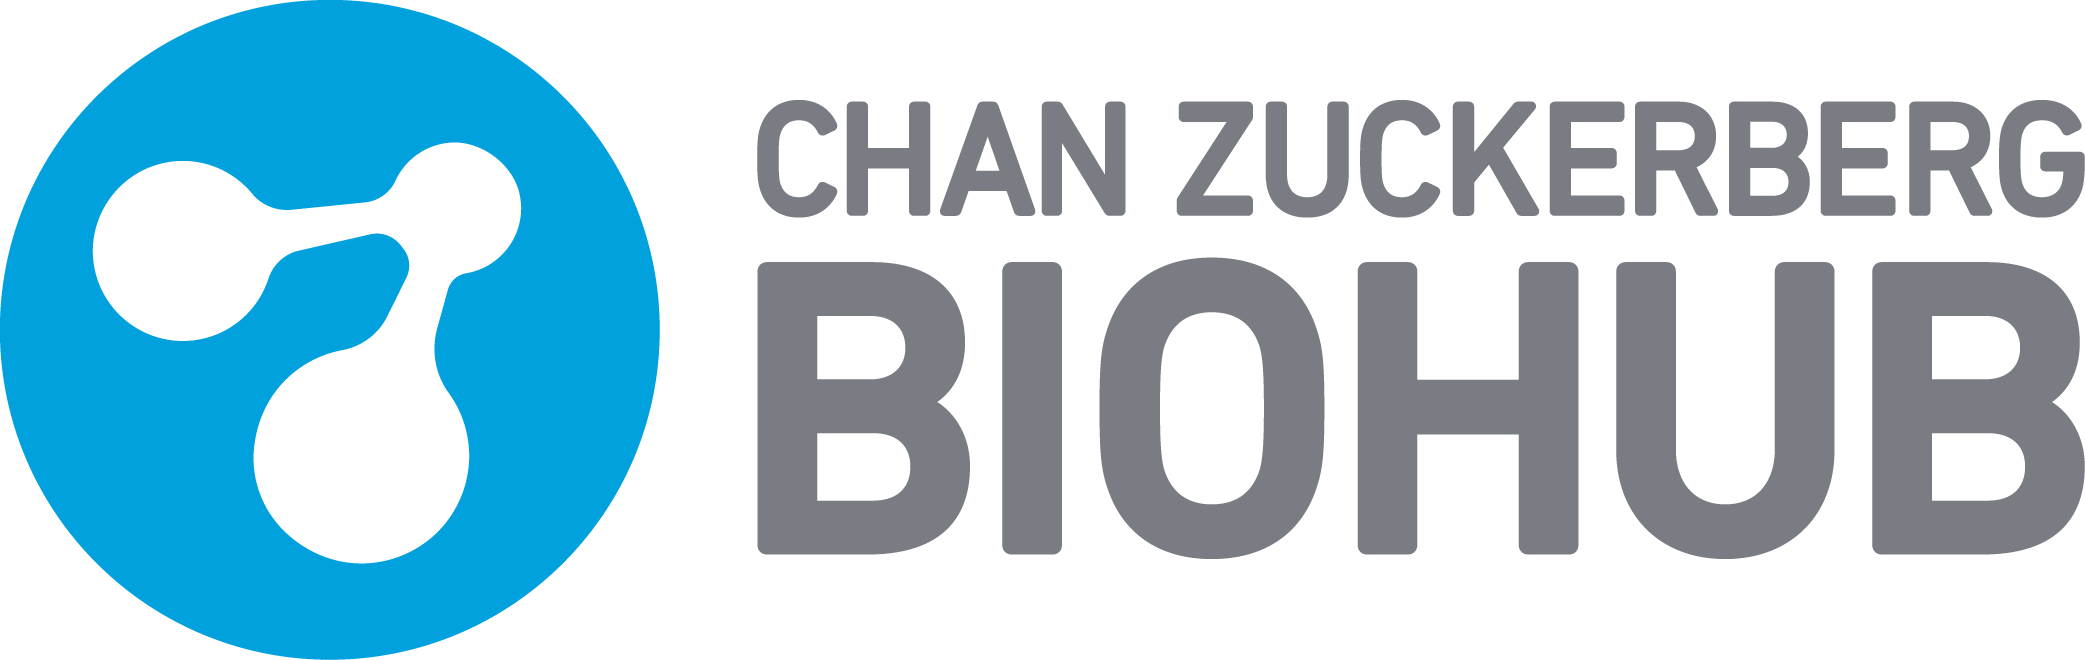 Chan Zuckerberg Biohub logo